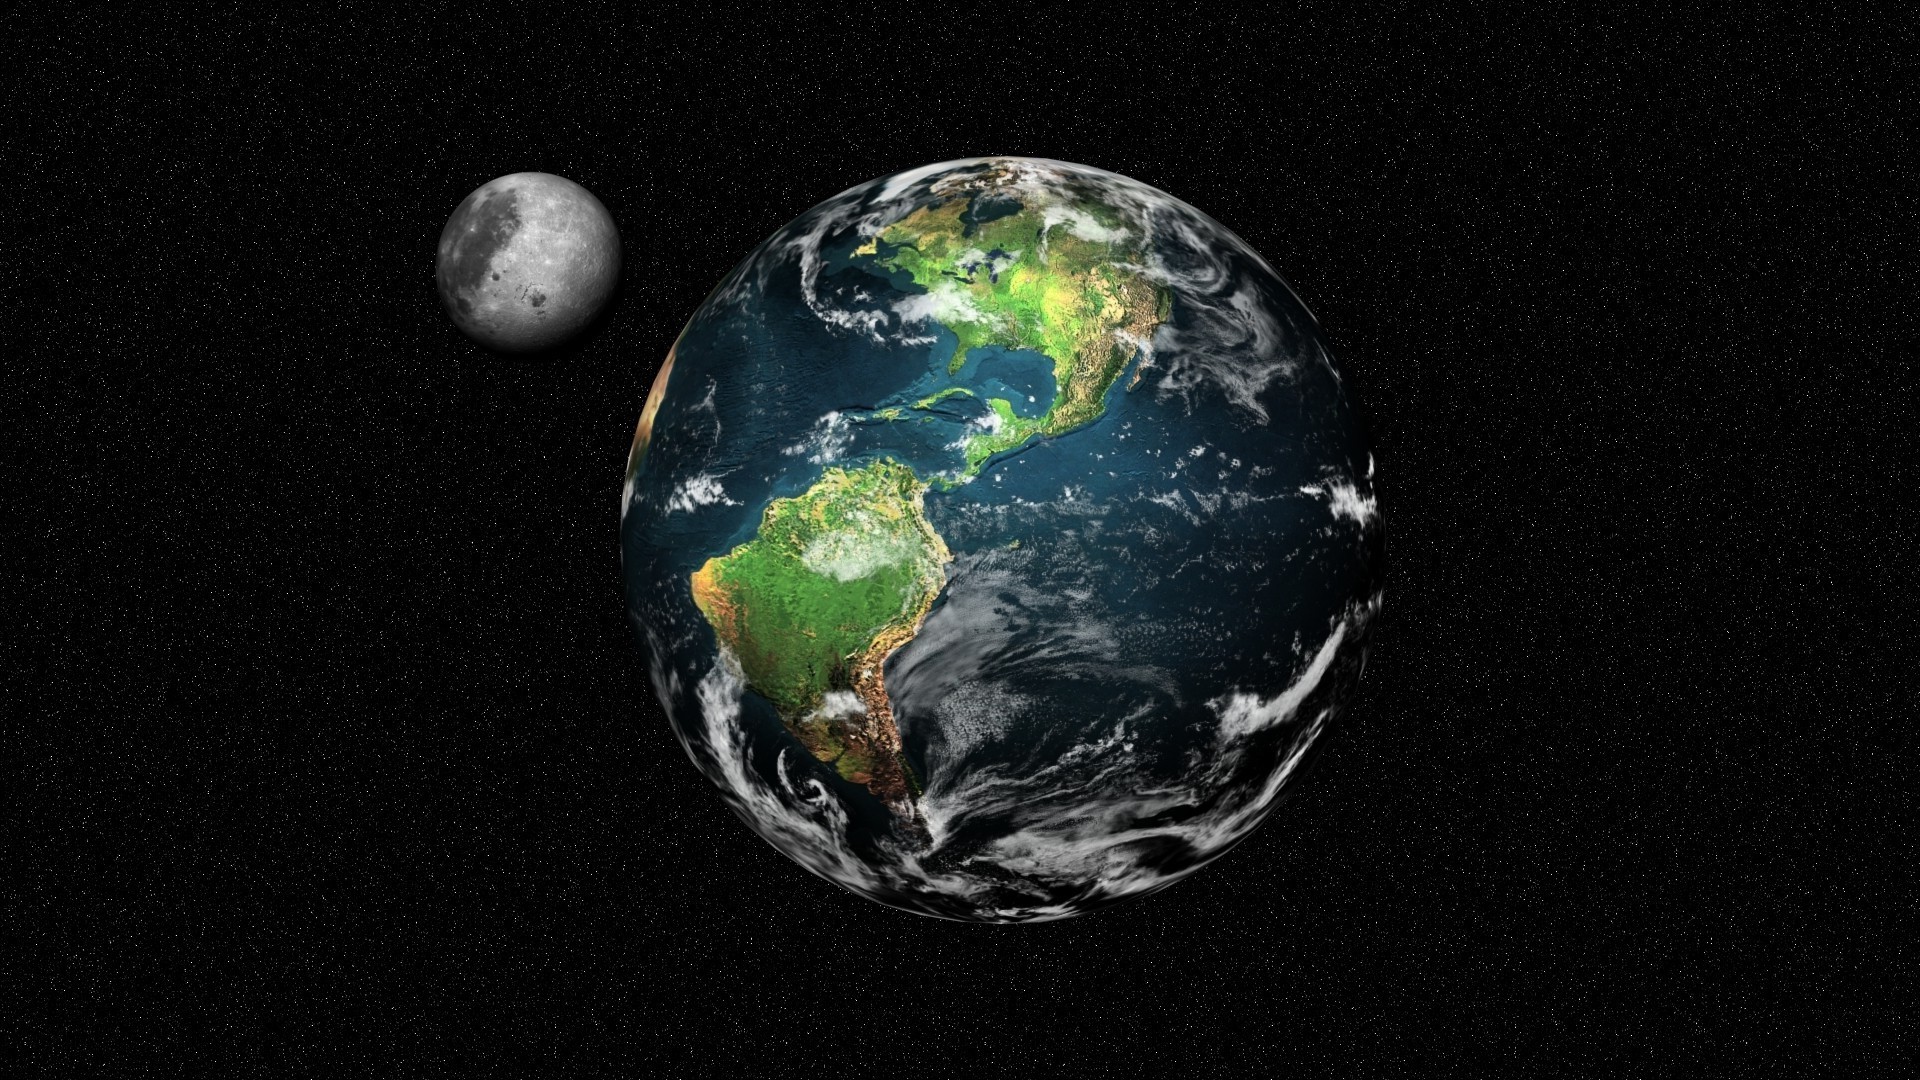 виды земли из космоса планеты шарообразные астрономия луна сфера сферически атмосфера разведка вселенная наука карте география пространство